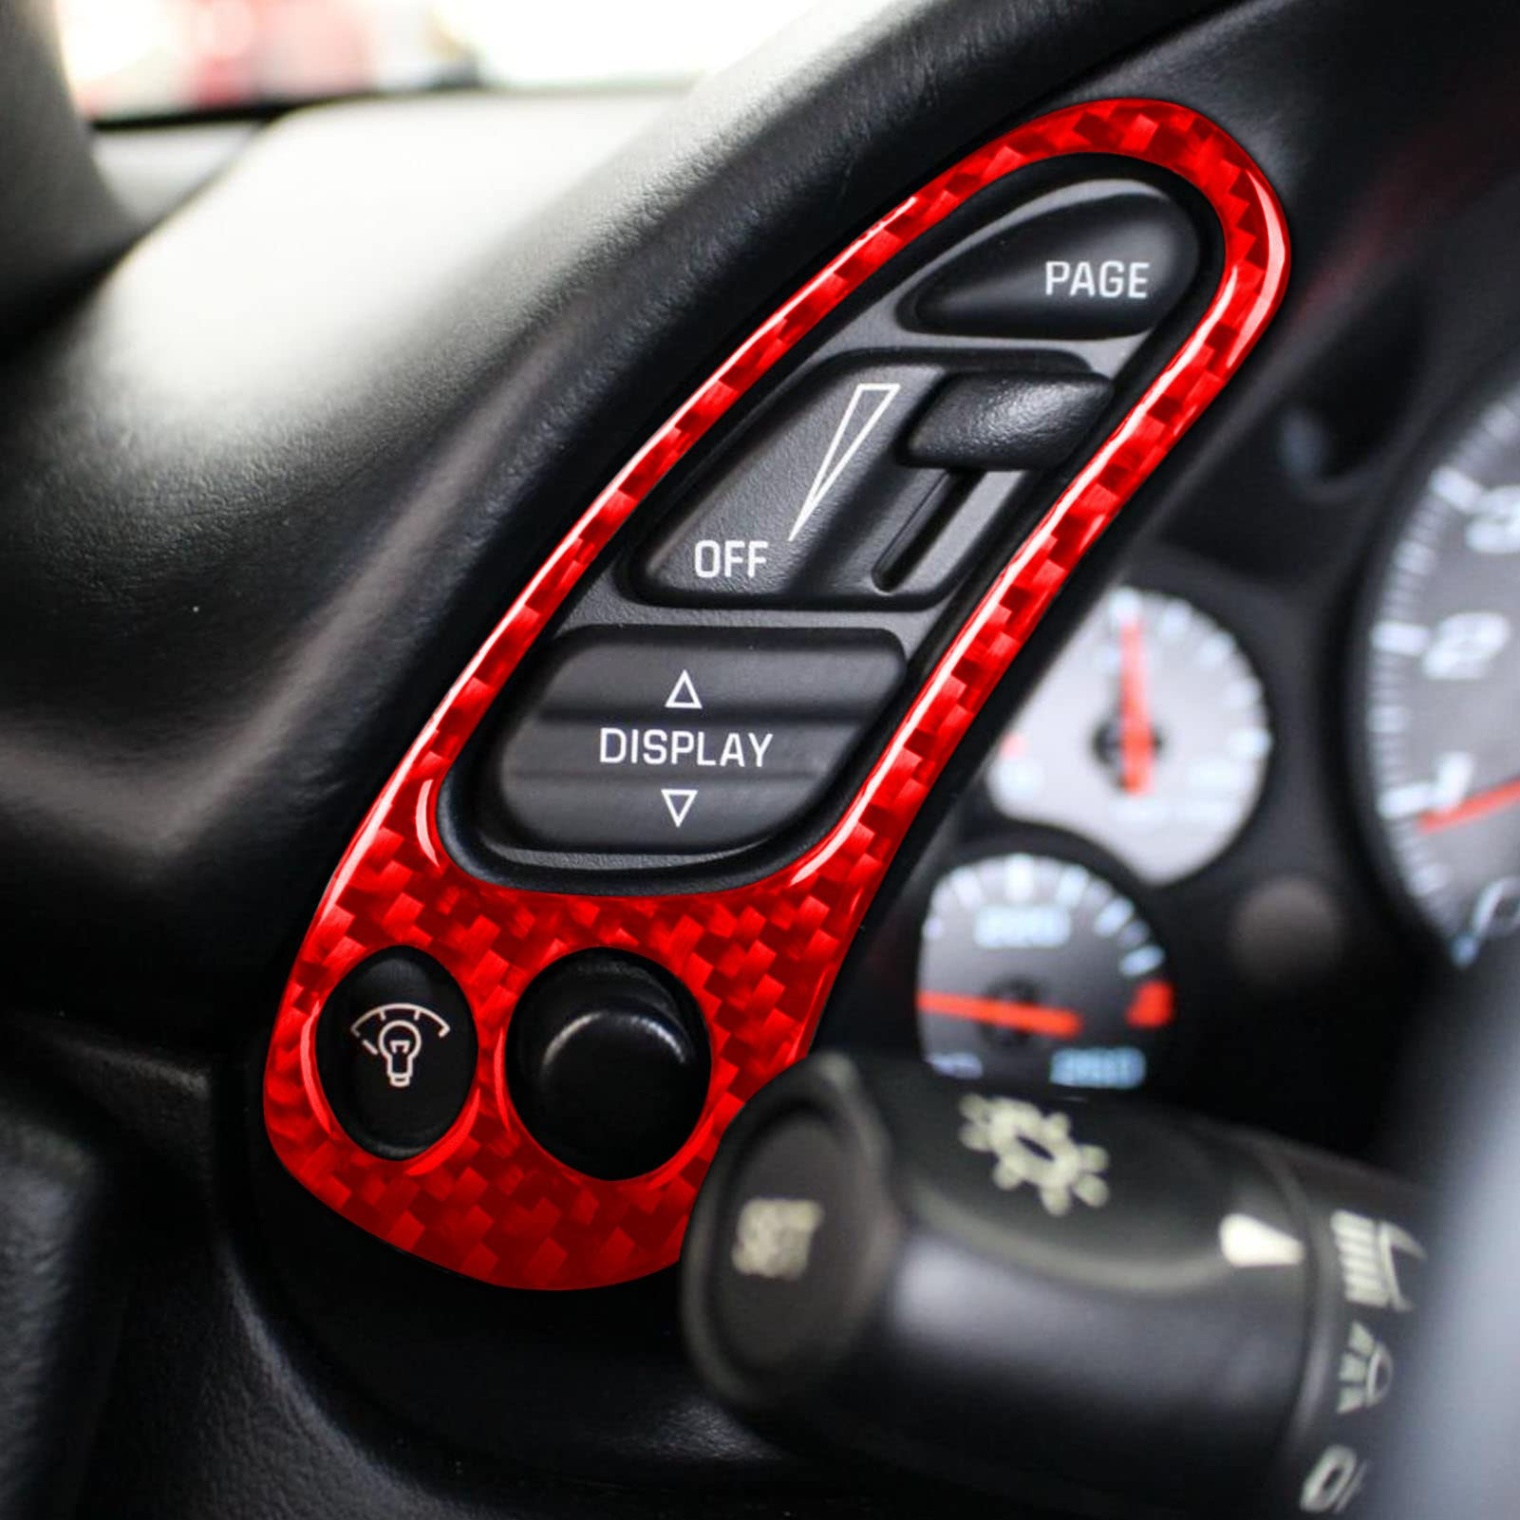 c5 corvette accessories Niche Utama Home pc/set Red Car Interior For Corvette C Accessories Dashboard  Multi-function Button Frame Carbon Fiber Cover Trim For Chevrolet Corvette  C -